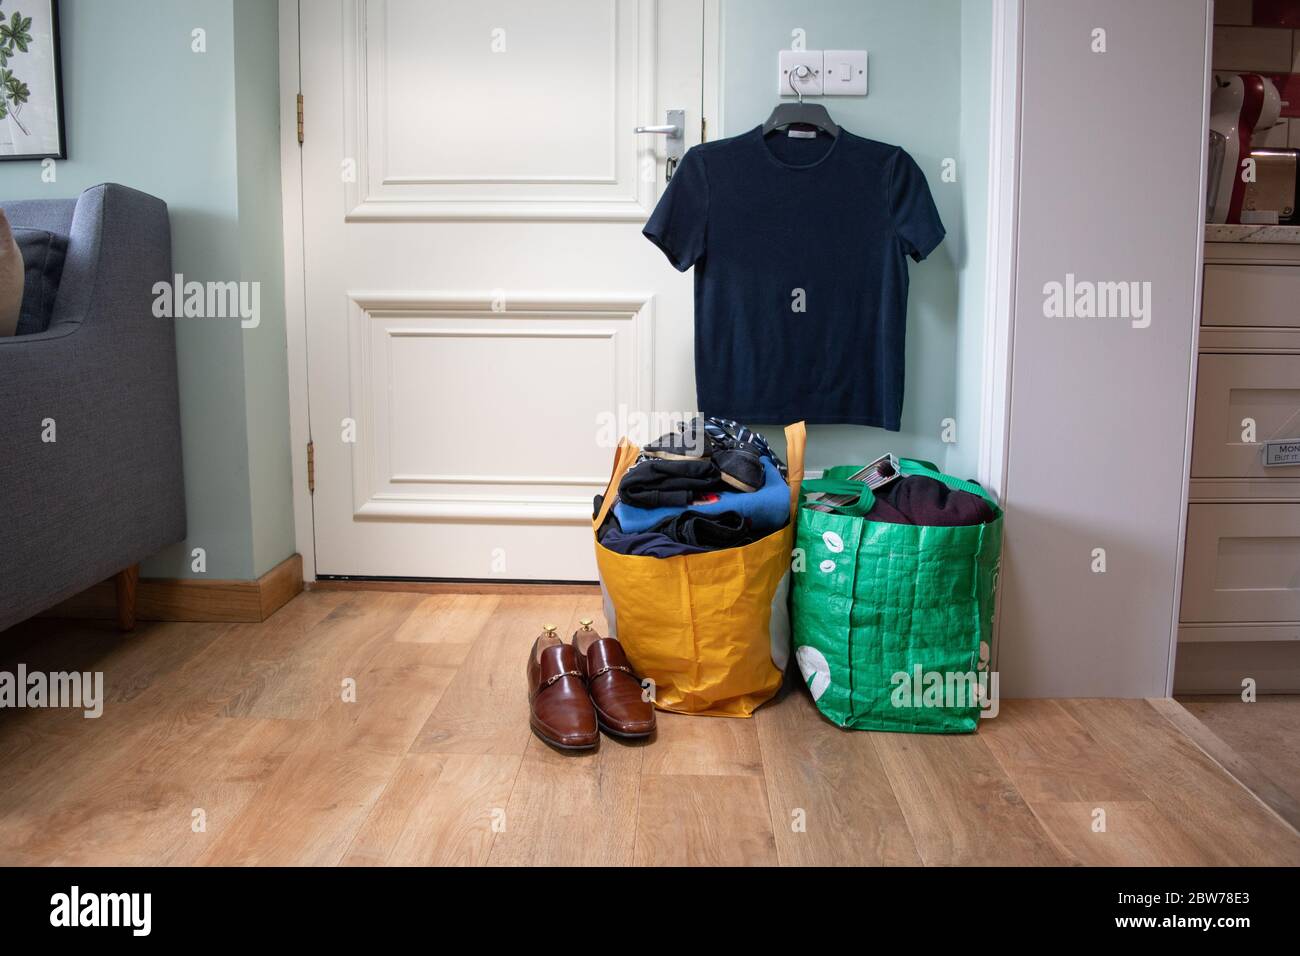 Eine Tasche mit Kleidung und Gegenständen, die darauf warten, an eine Wohltätigkeitsorganisation oder einen Sparladen gespendet zu werden. Stockfoto